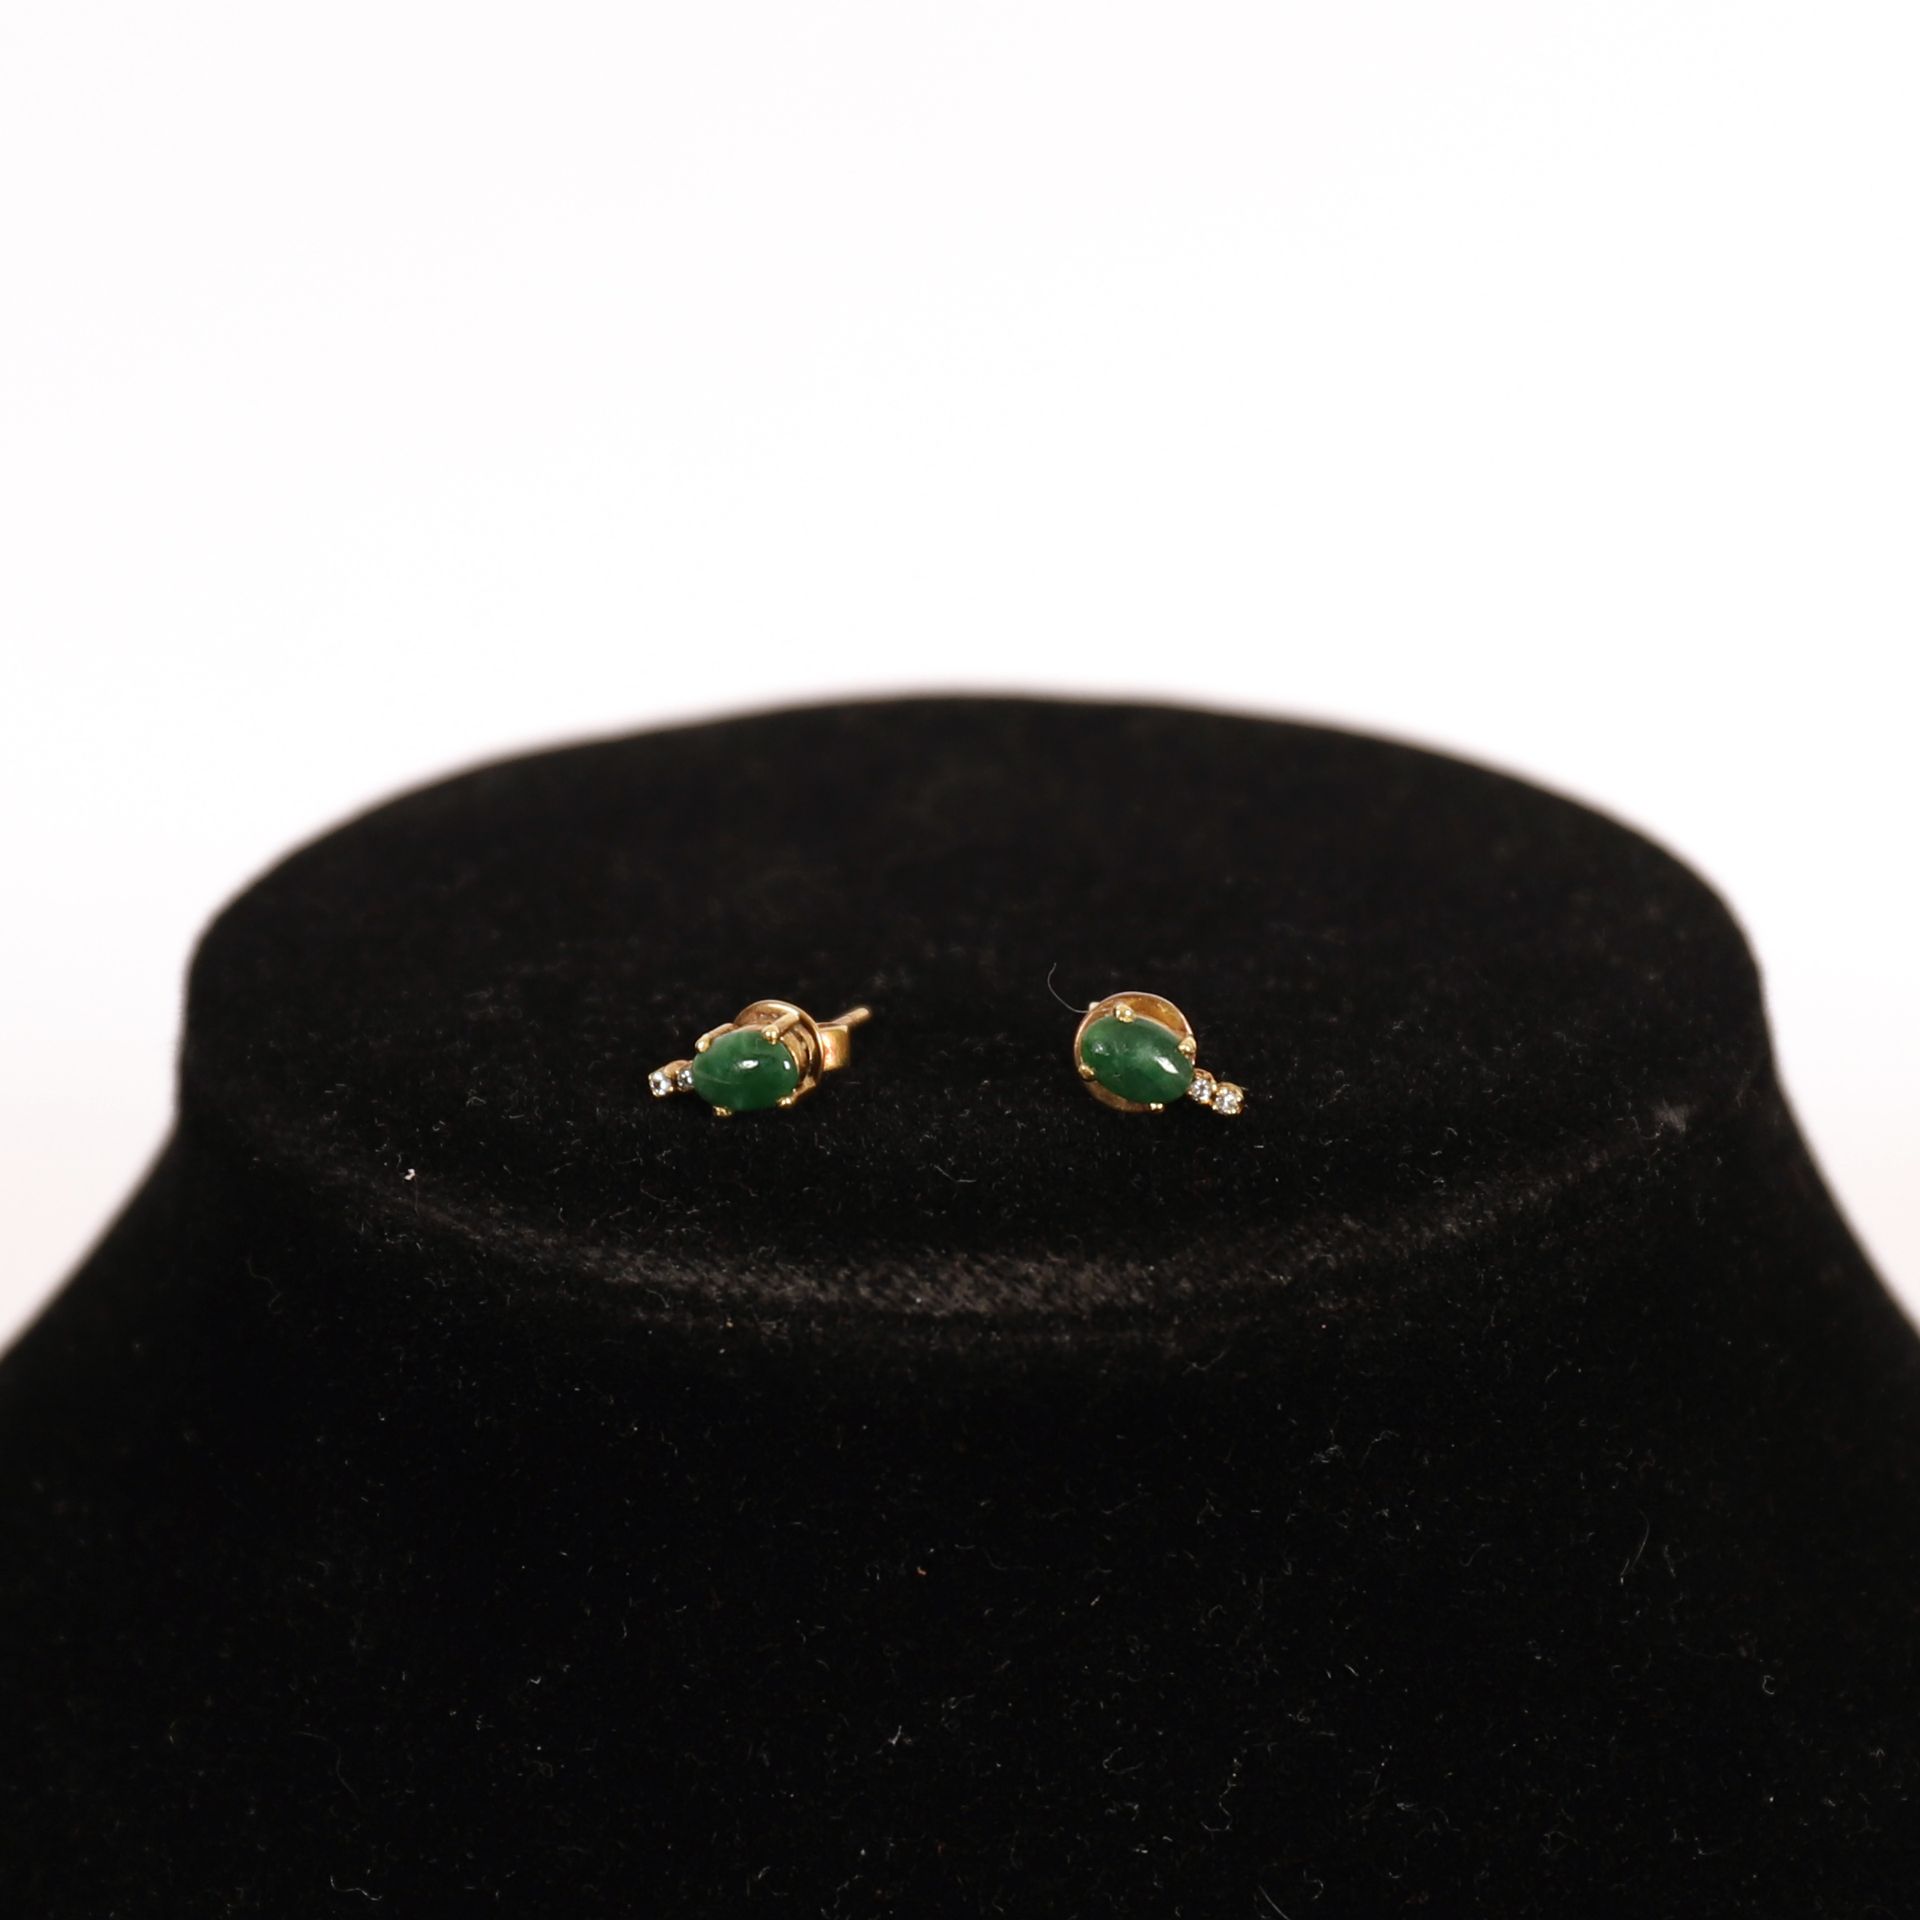 Null 绿宝石耳环一对

镶嵌绿色凸圆形宝石和小钻石的黄金底座

重量：2克左右。